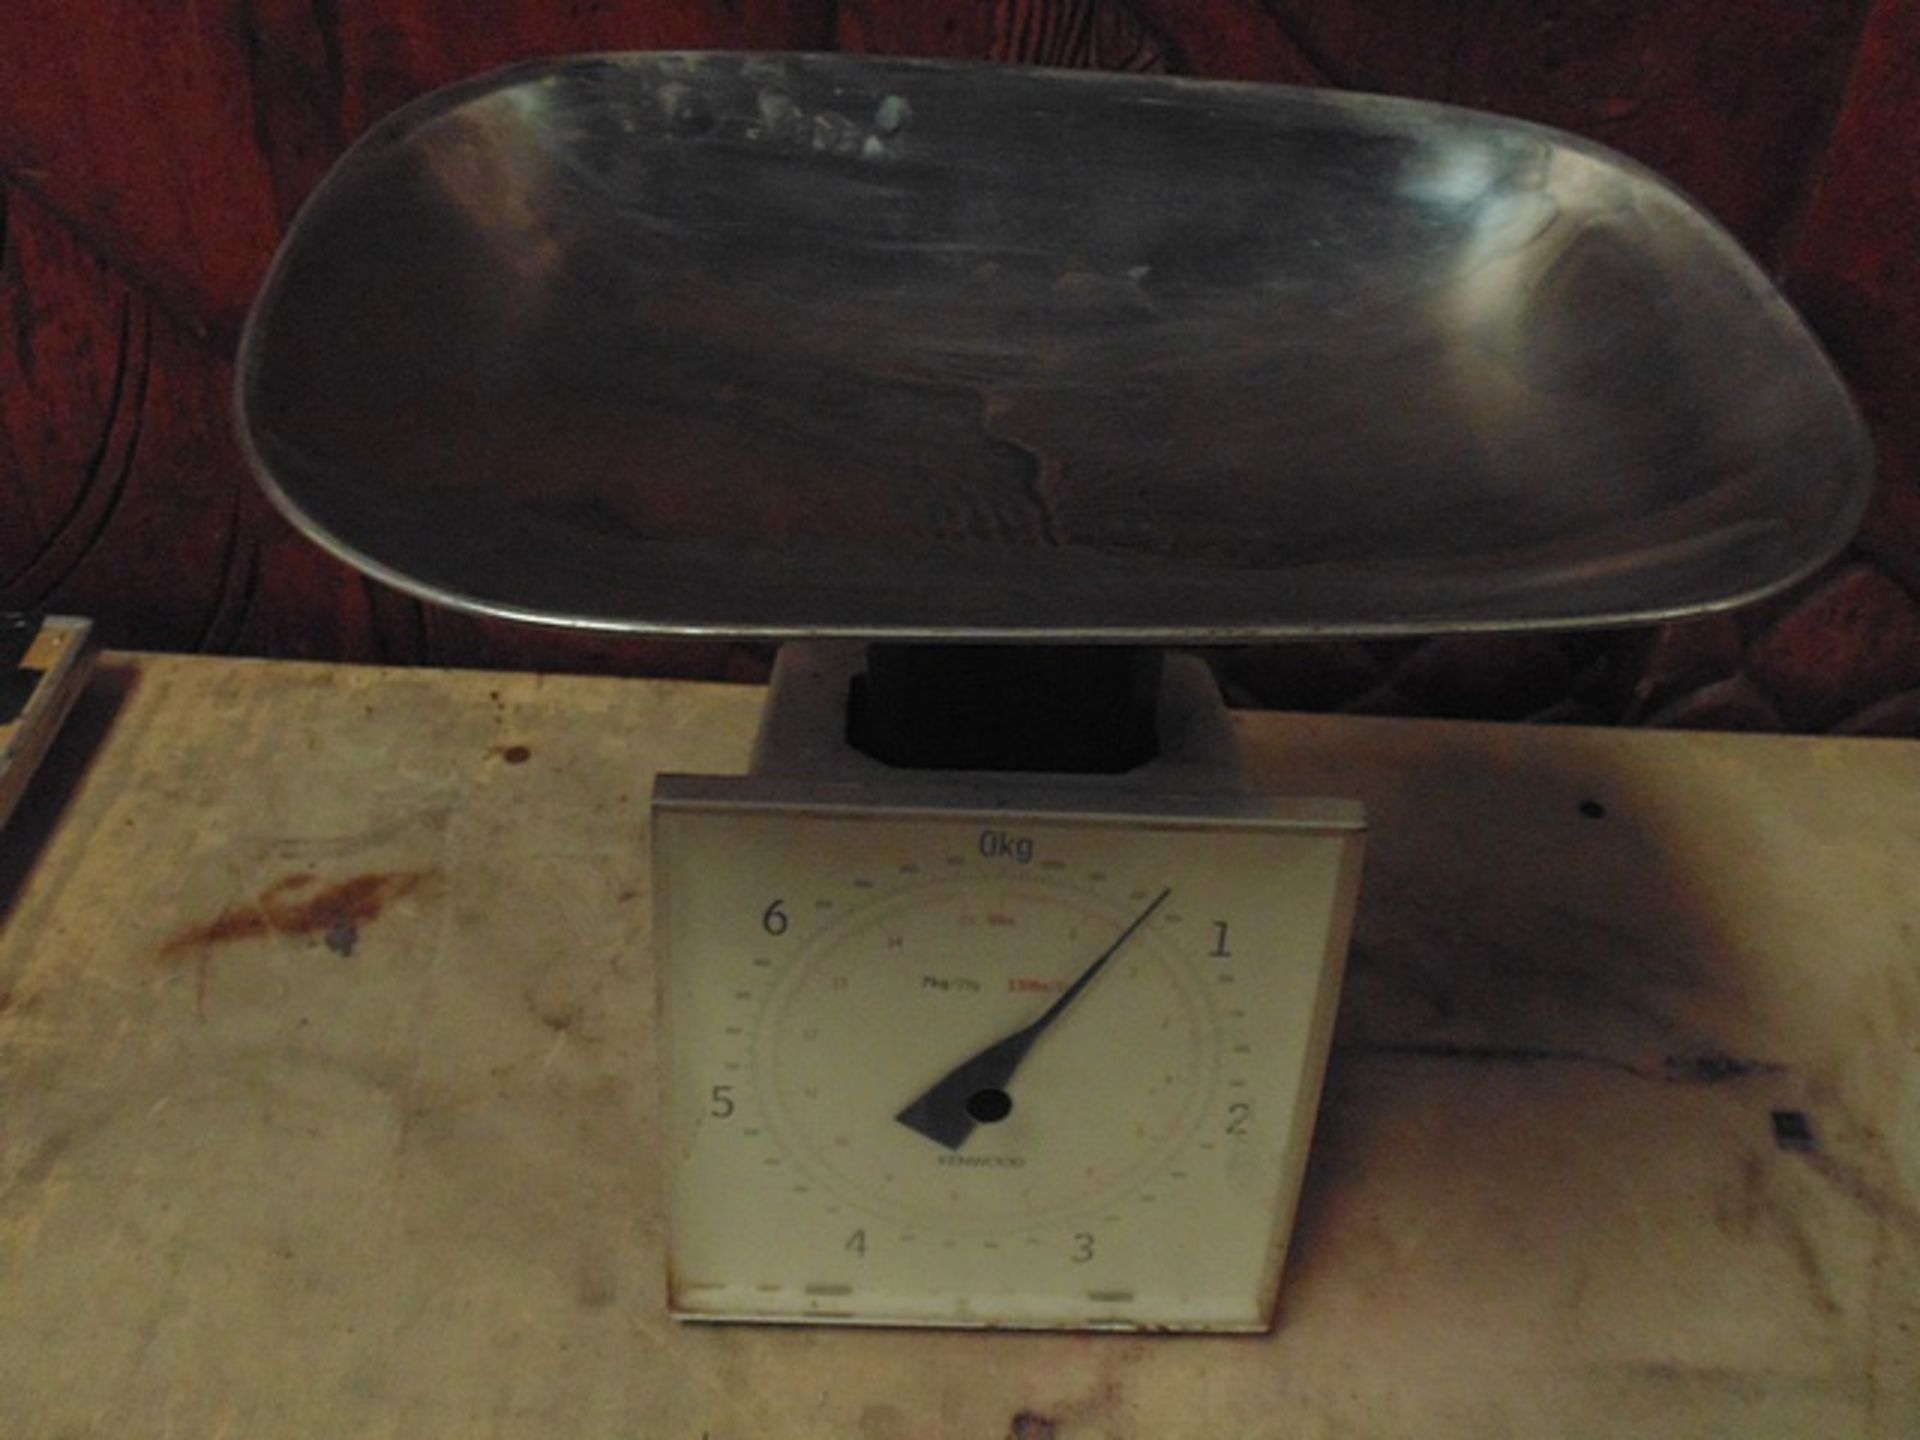 Kenwood general purpose kitchen scales 7kg capacity steel pan top